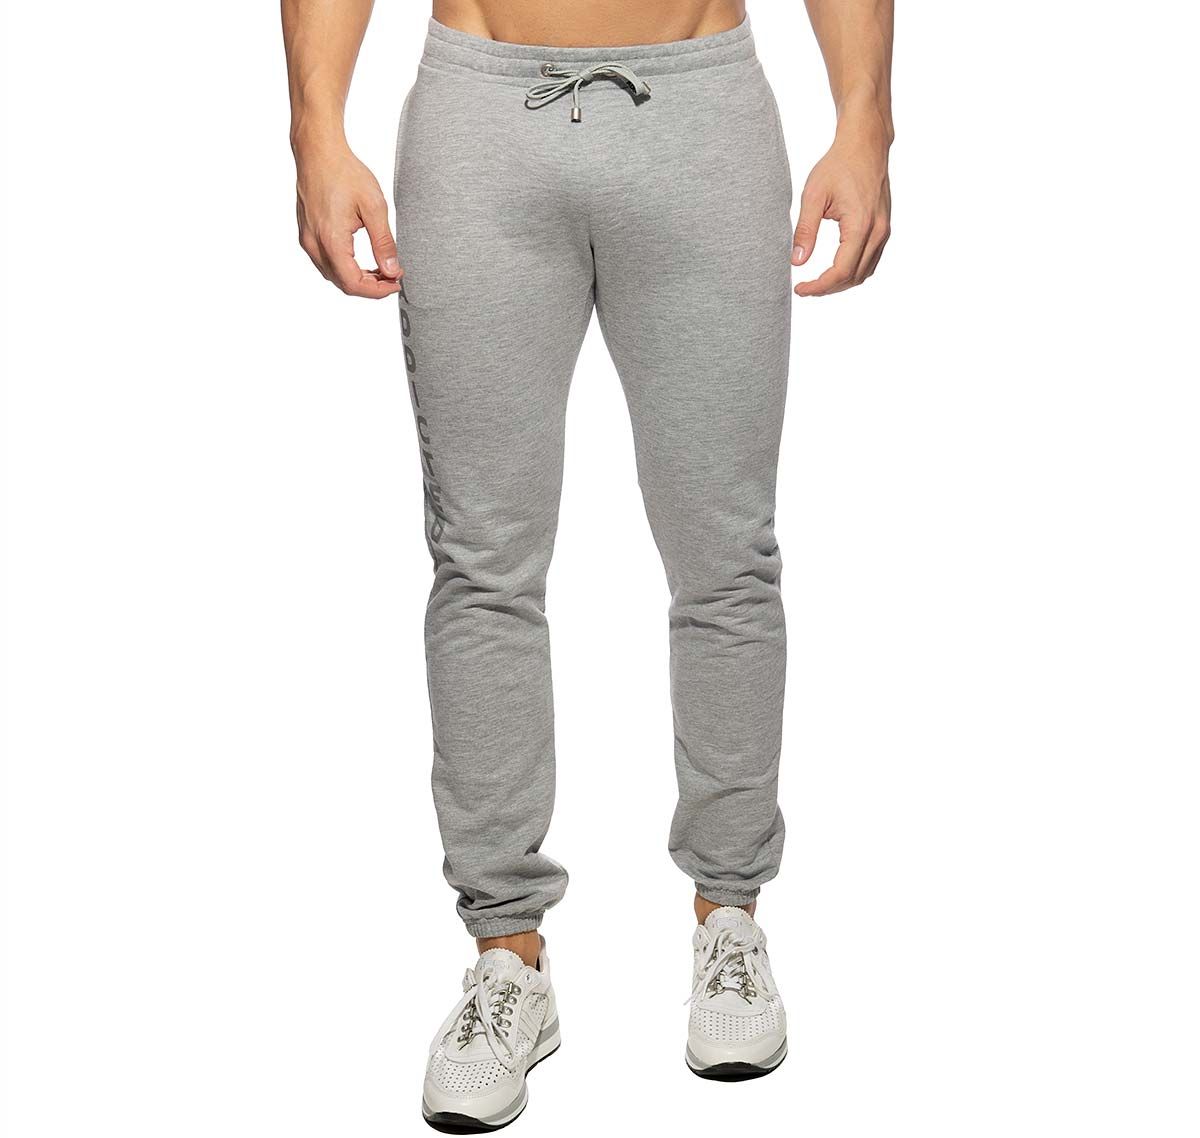 Addicted Pantalón deportivo LONG JOGGING PANTS AD999, gris